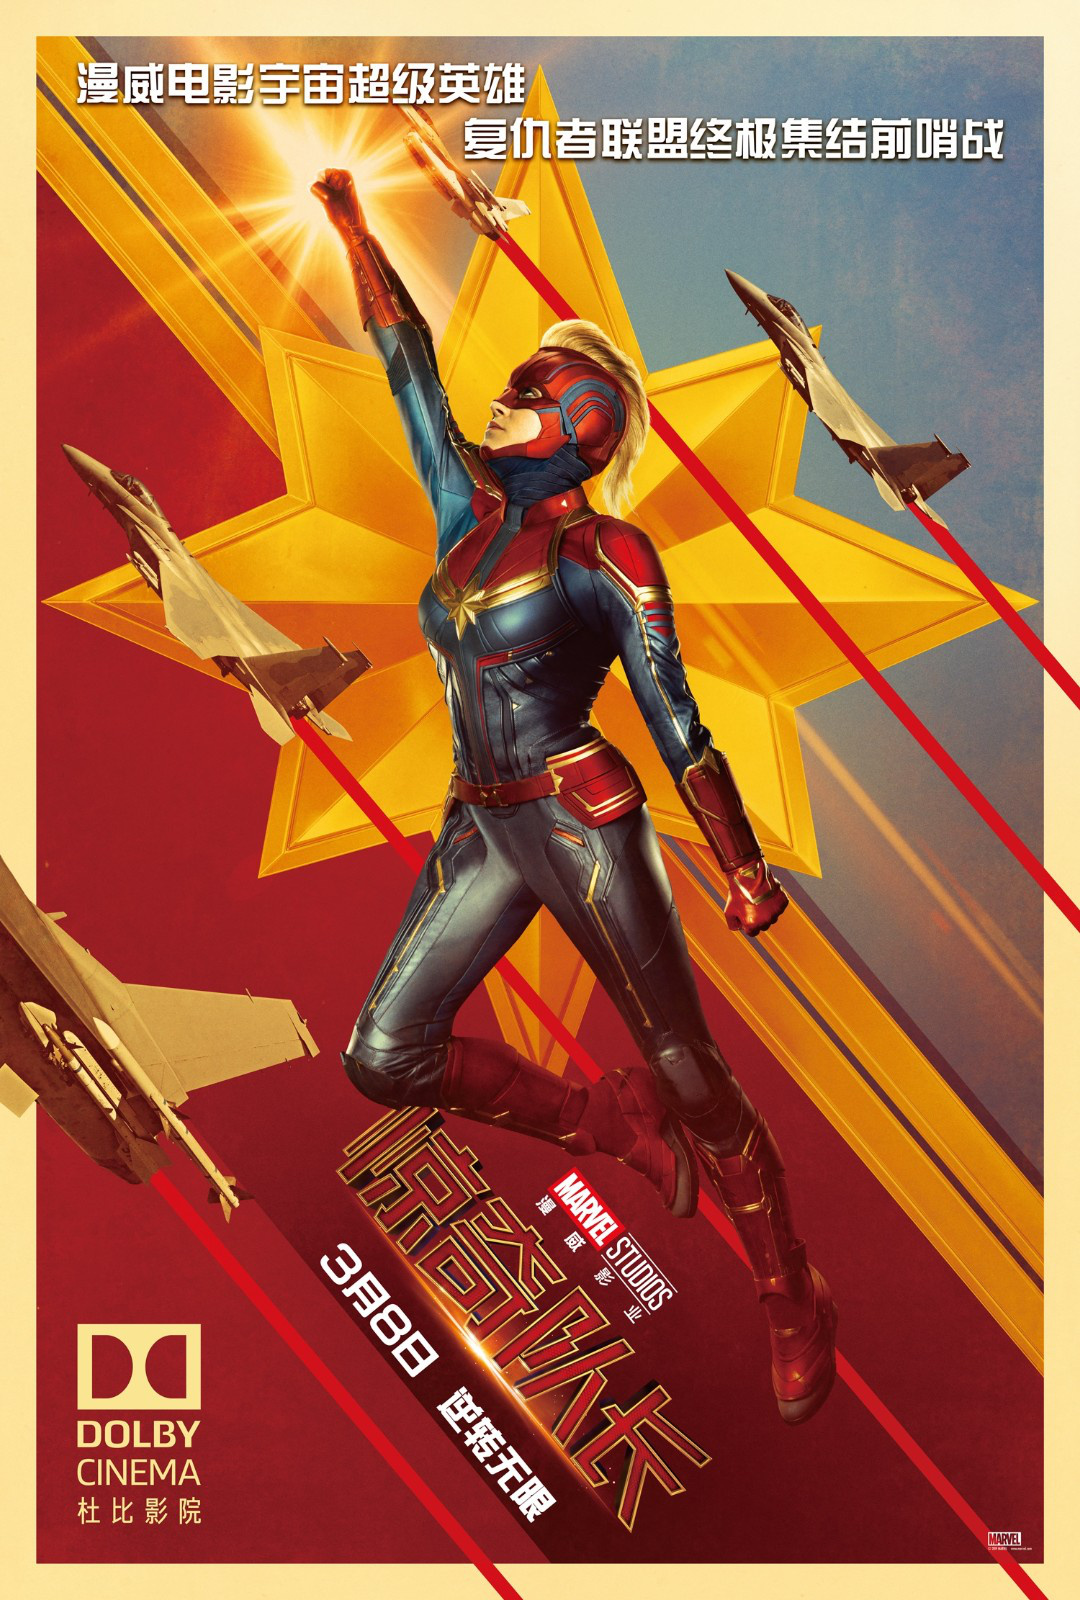 《惊奇队长》曝杜比版海报 全新超级英雄横空出世